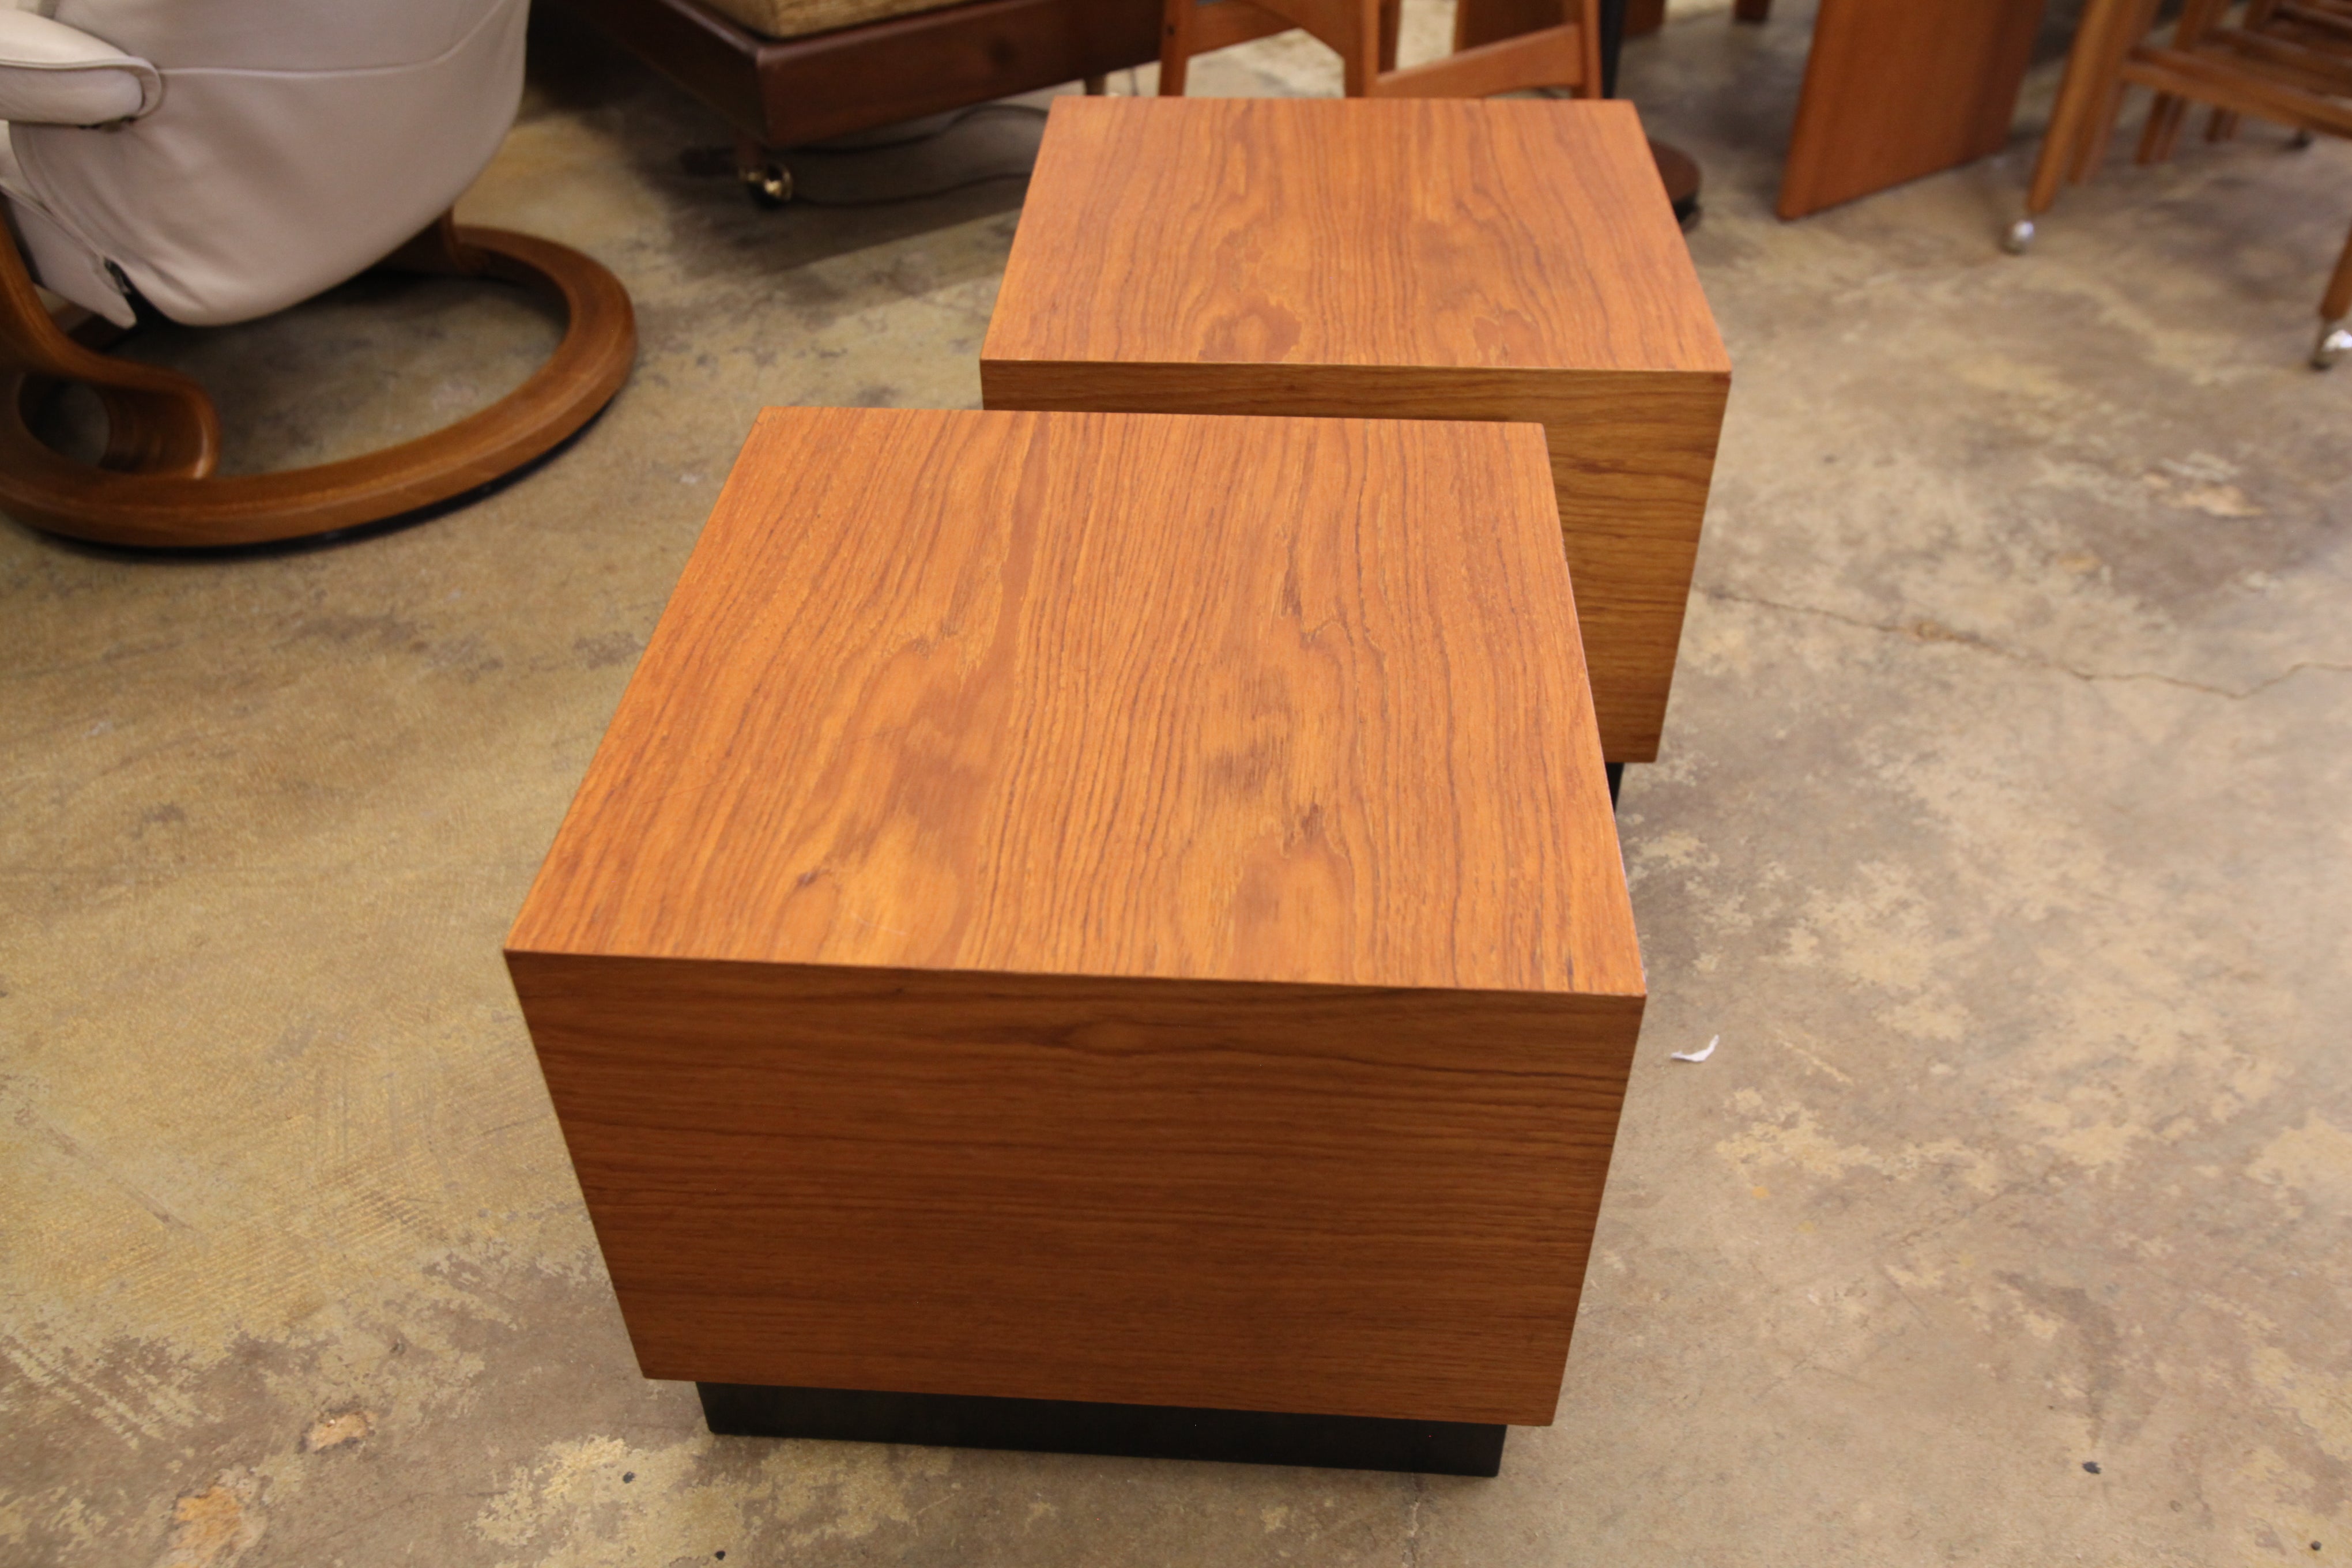 Set of 2 Vintage Teak Cube Side Tables (18" x 18" x 15"H)